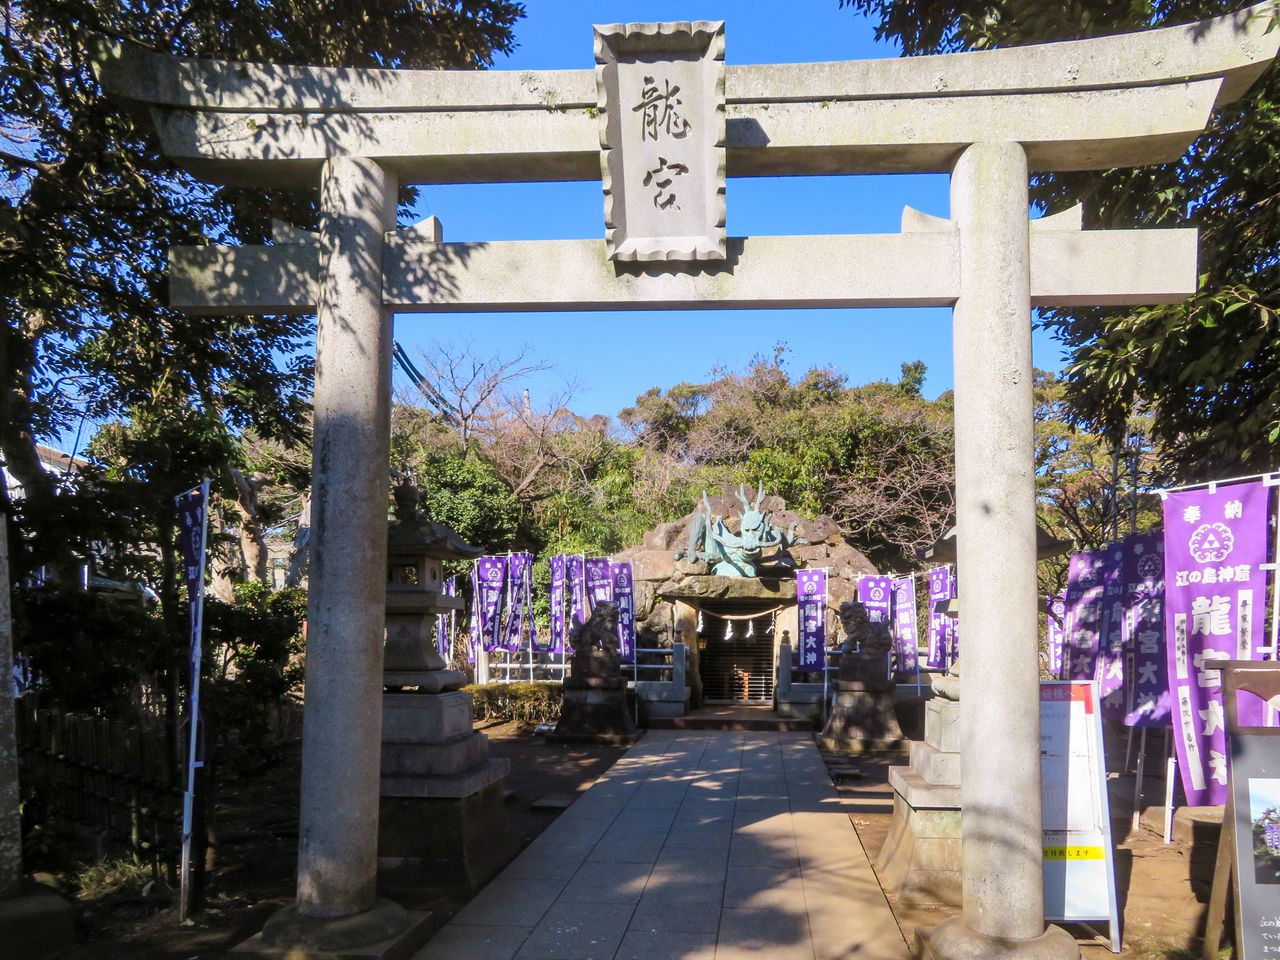 يقع معبد ”واداتسومي نو يميا“ فوق مغارة يعتقد أن التنين كان يعيش فيها (© شيبويا نوبوهيرو).